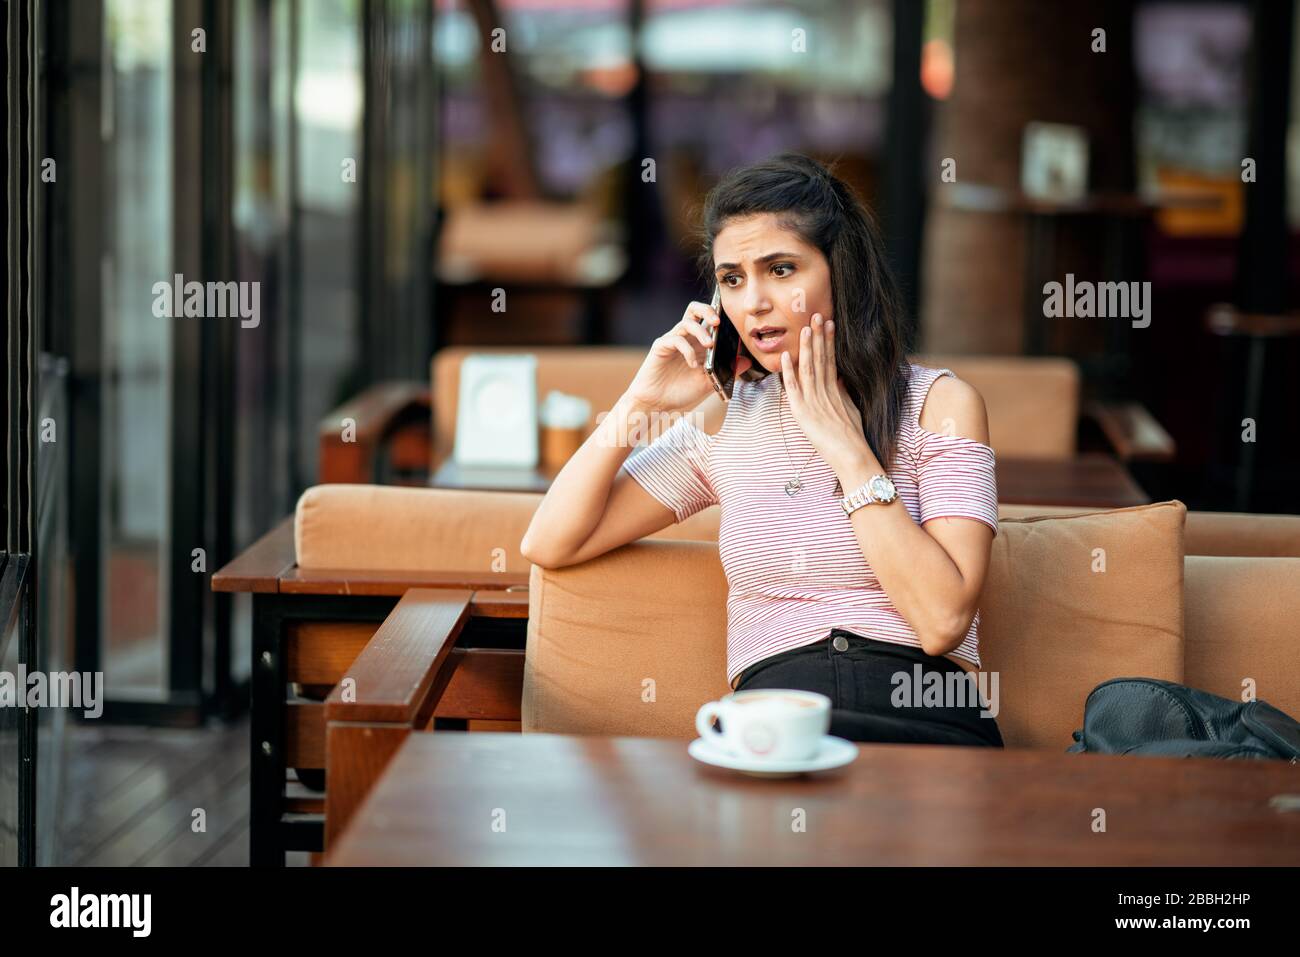 Una mujer joven habla con el teléfono y tiene una cara sorprendida y preocupada en un café elegante Foto de stock